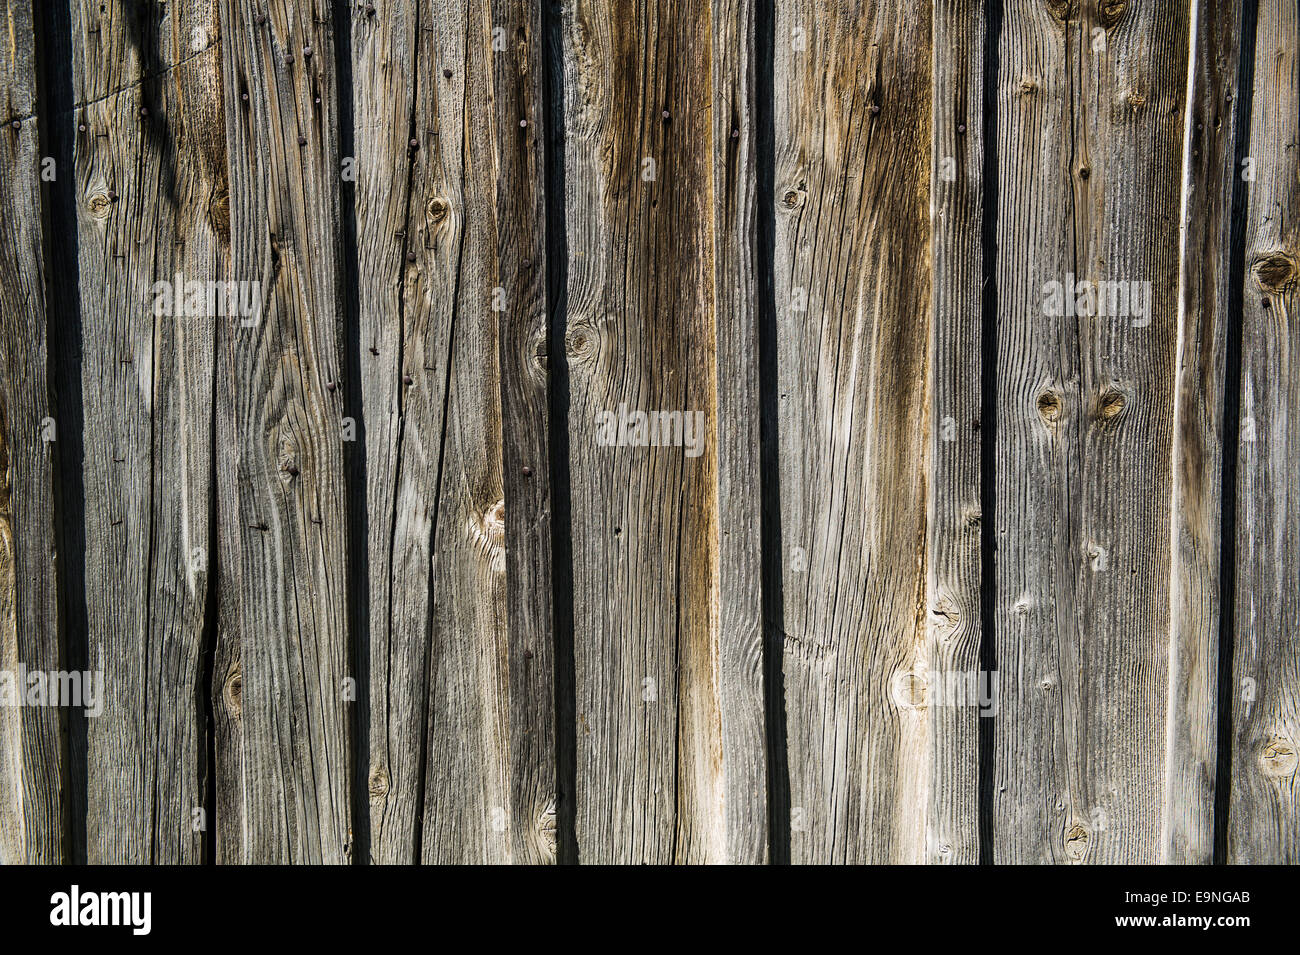 background wood Stock Photo